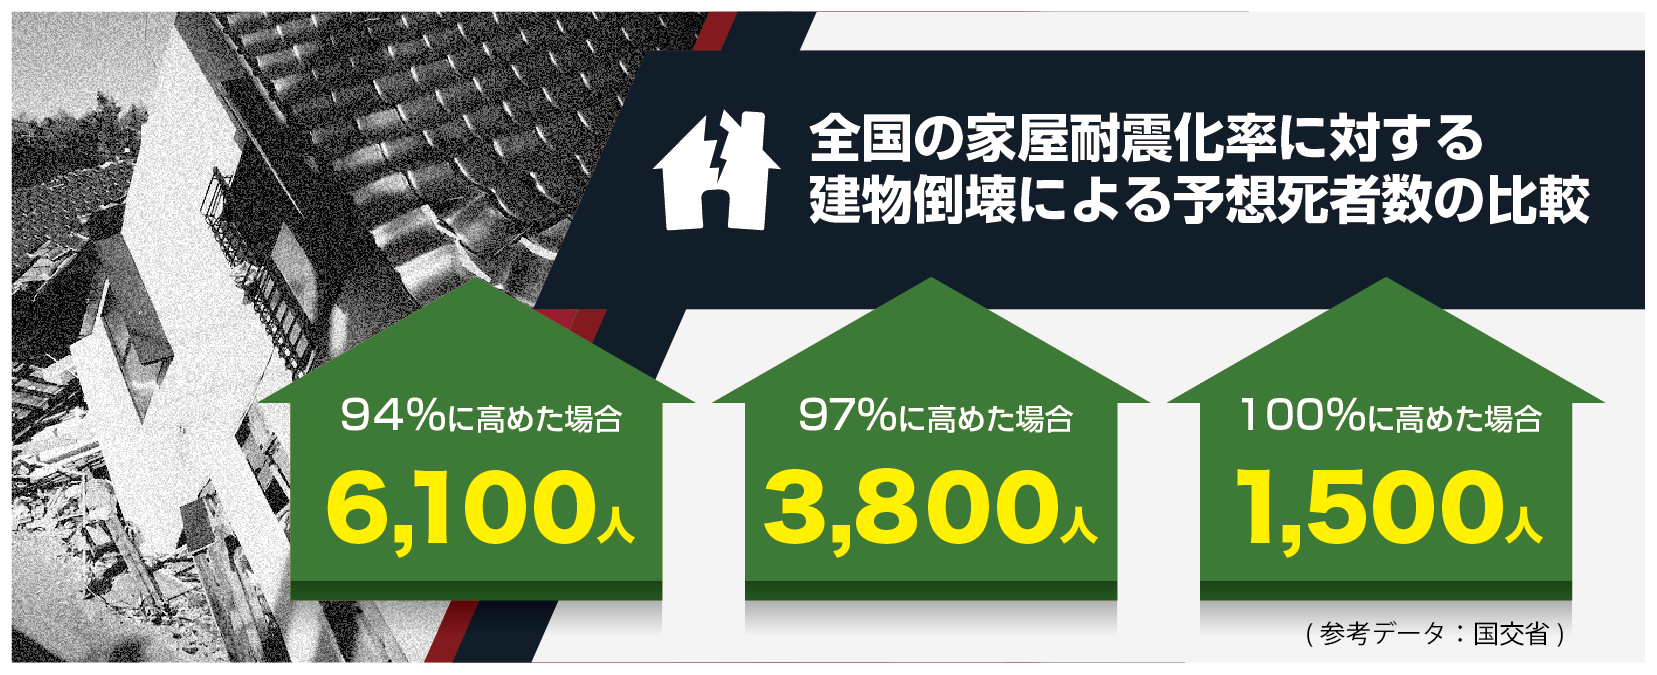 全国の家屋耐震化率に対する建物倒壊による予想死者数の比較